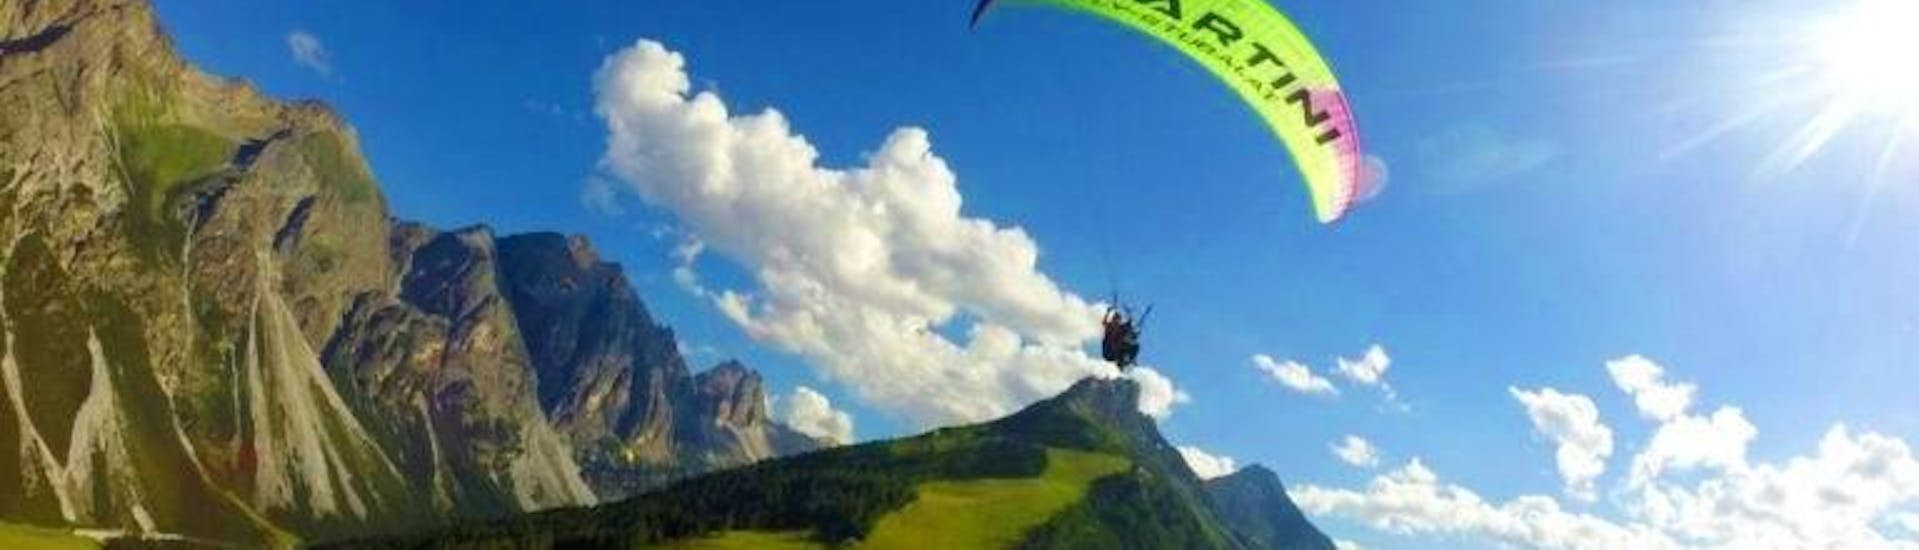 Der Tandempilot von Fly-Stubai fliegt über ein wunderschönes Bergpanorama während dem Tandem Paragliding im Stubai - Höhenflug.